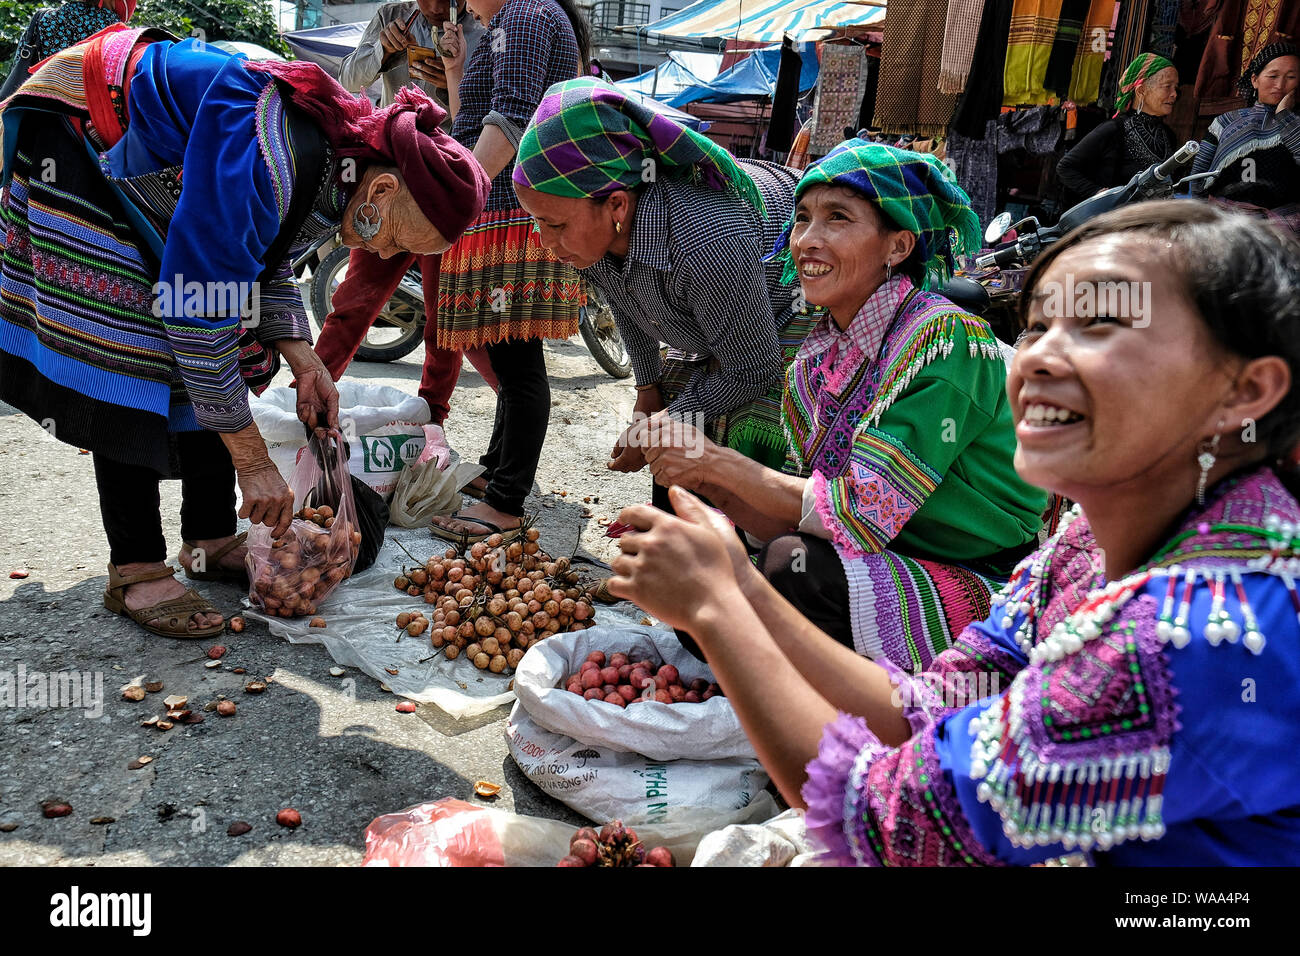 Bac Ha, Vietnam - Août 26 : les femmes Hmong robe traditionnelle avec la vente de légumes sur le marché le 26 août 2018 à Bac Ha, au Vietnam. Banque D'Images